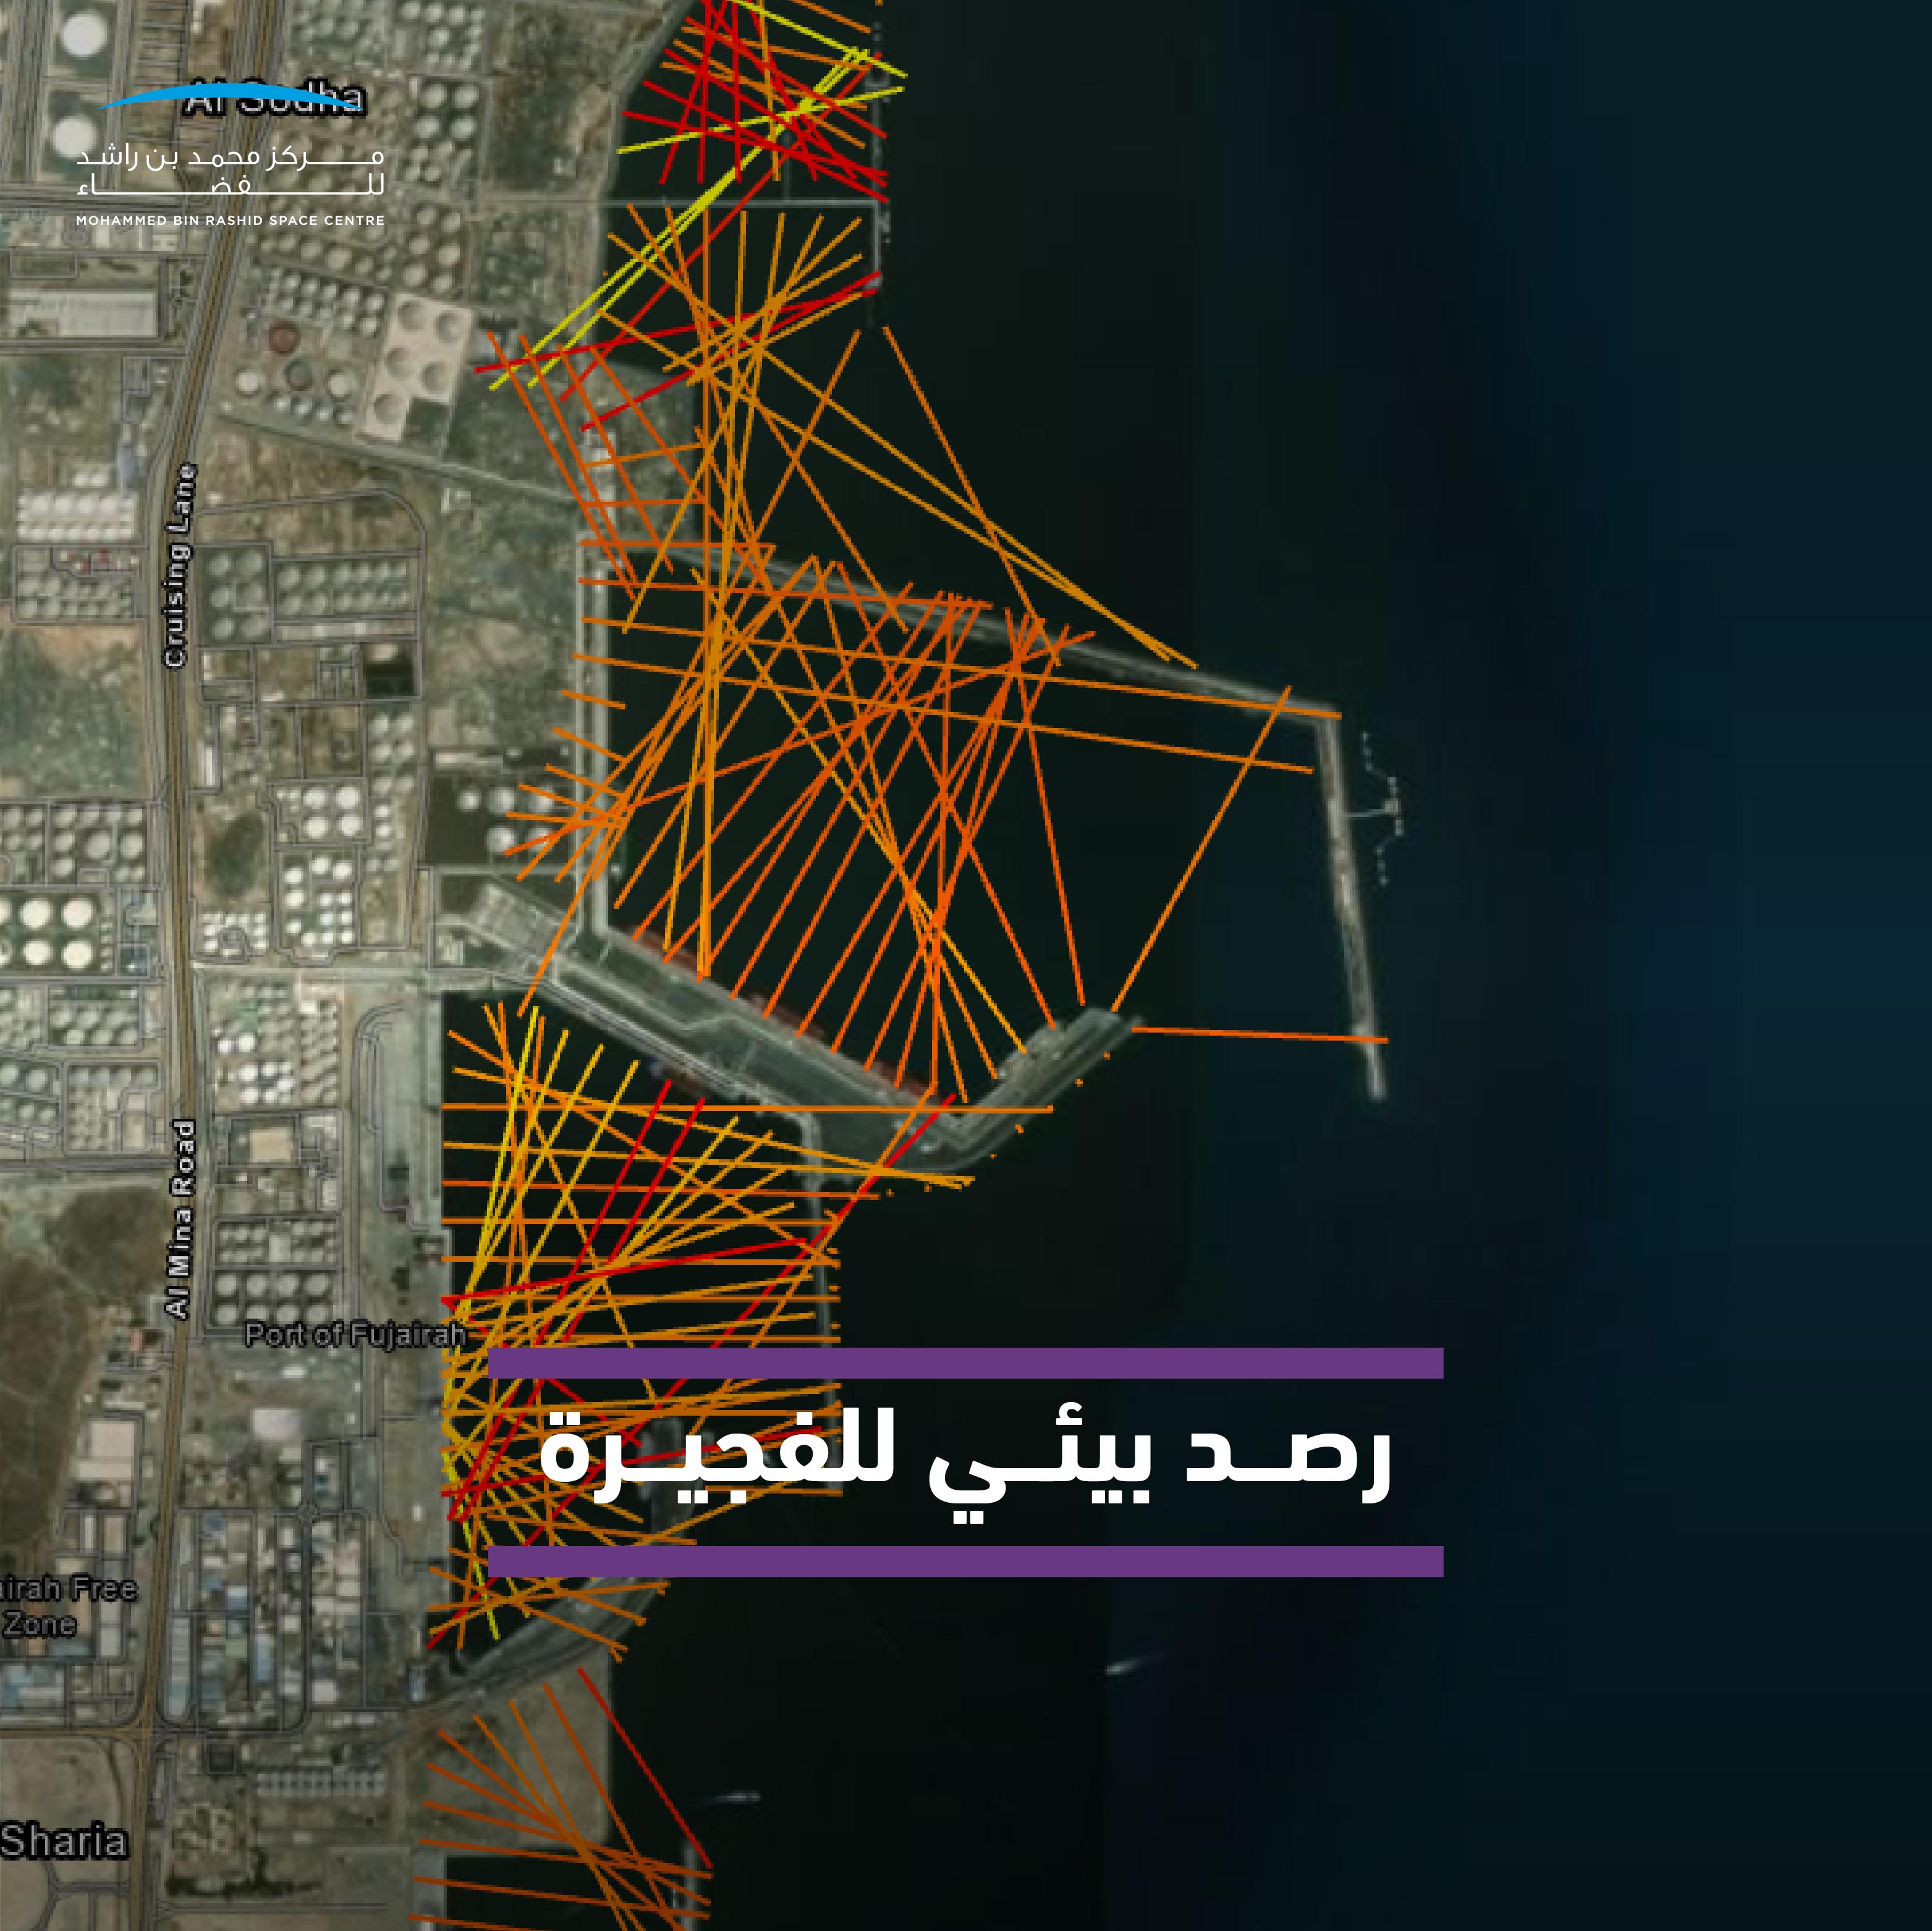 "محمد بن راشد للفضاء" يرصد التغيرات على ساحل الفجيرة